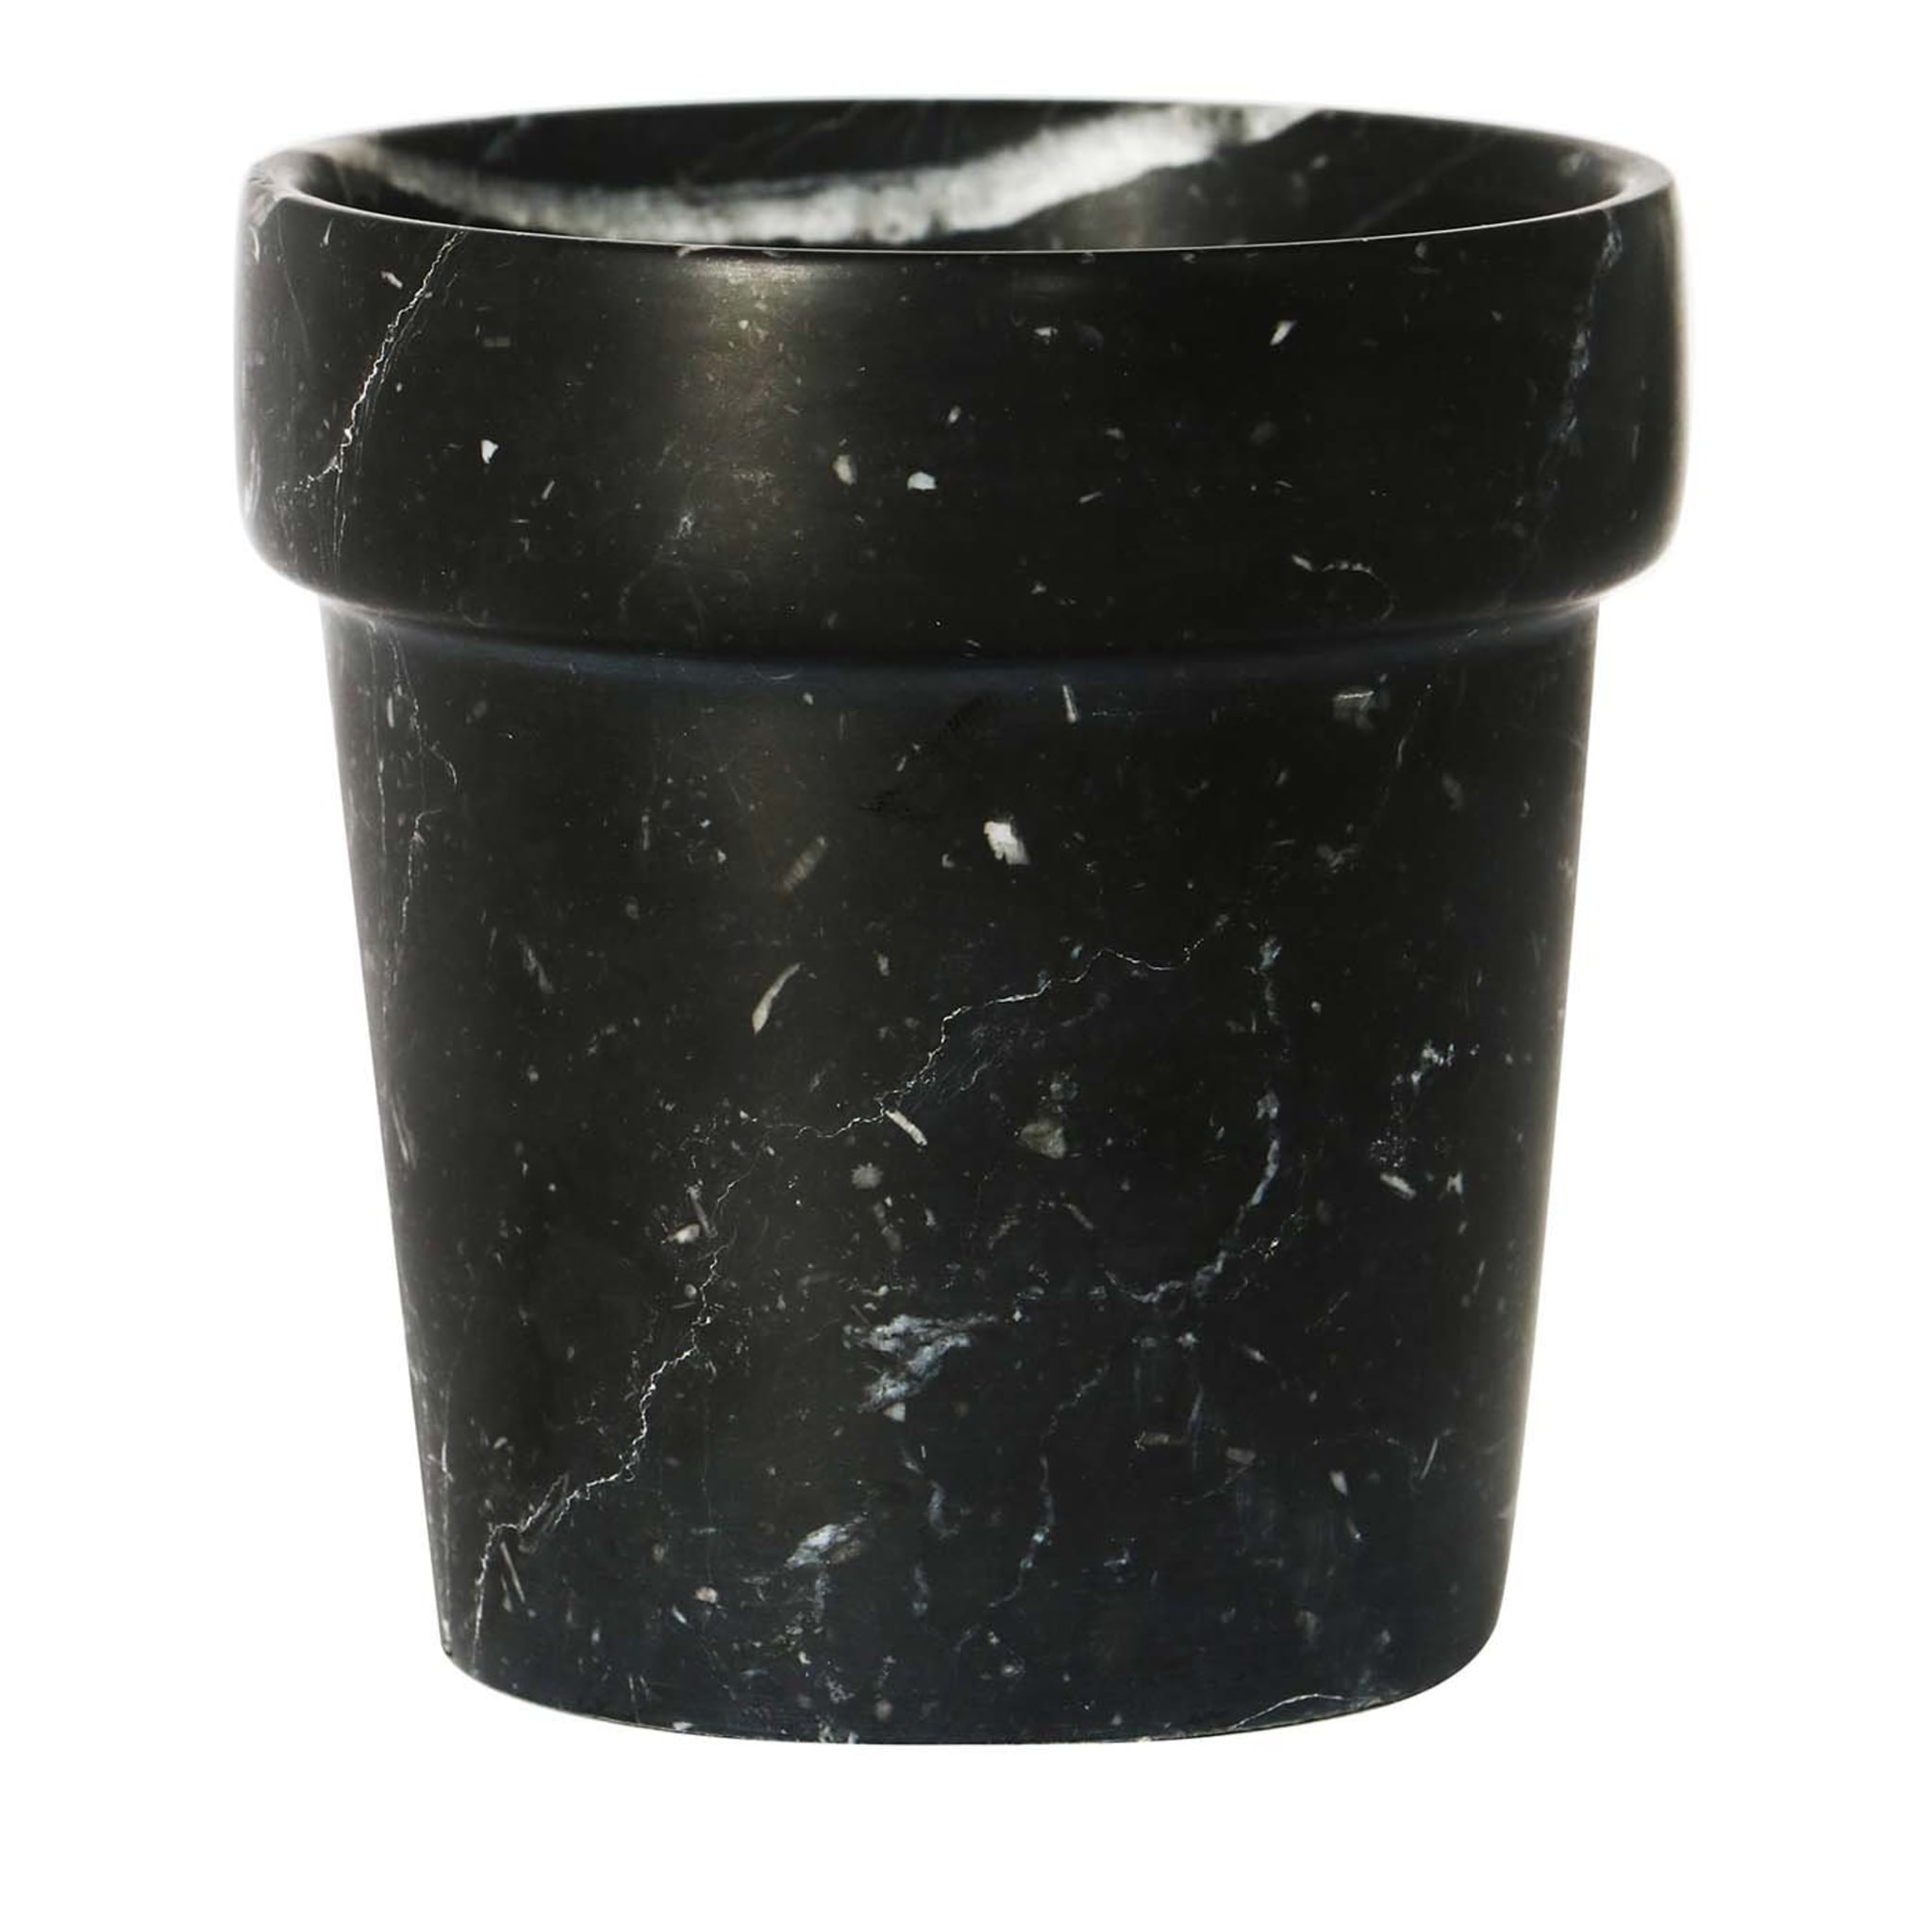 Mini Cactus Vase in Black Marquina Marble - Main view